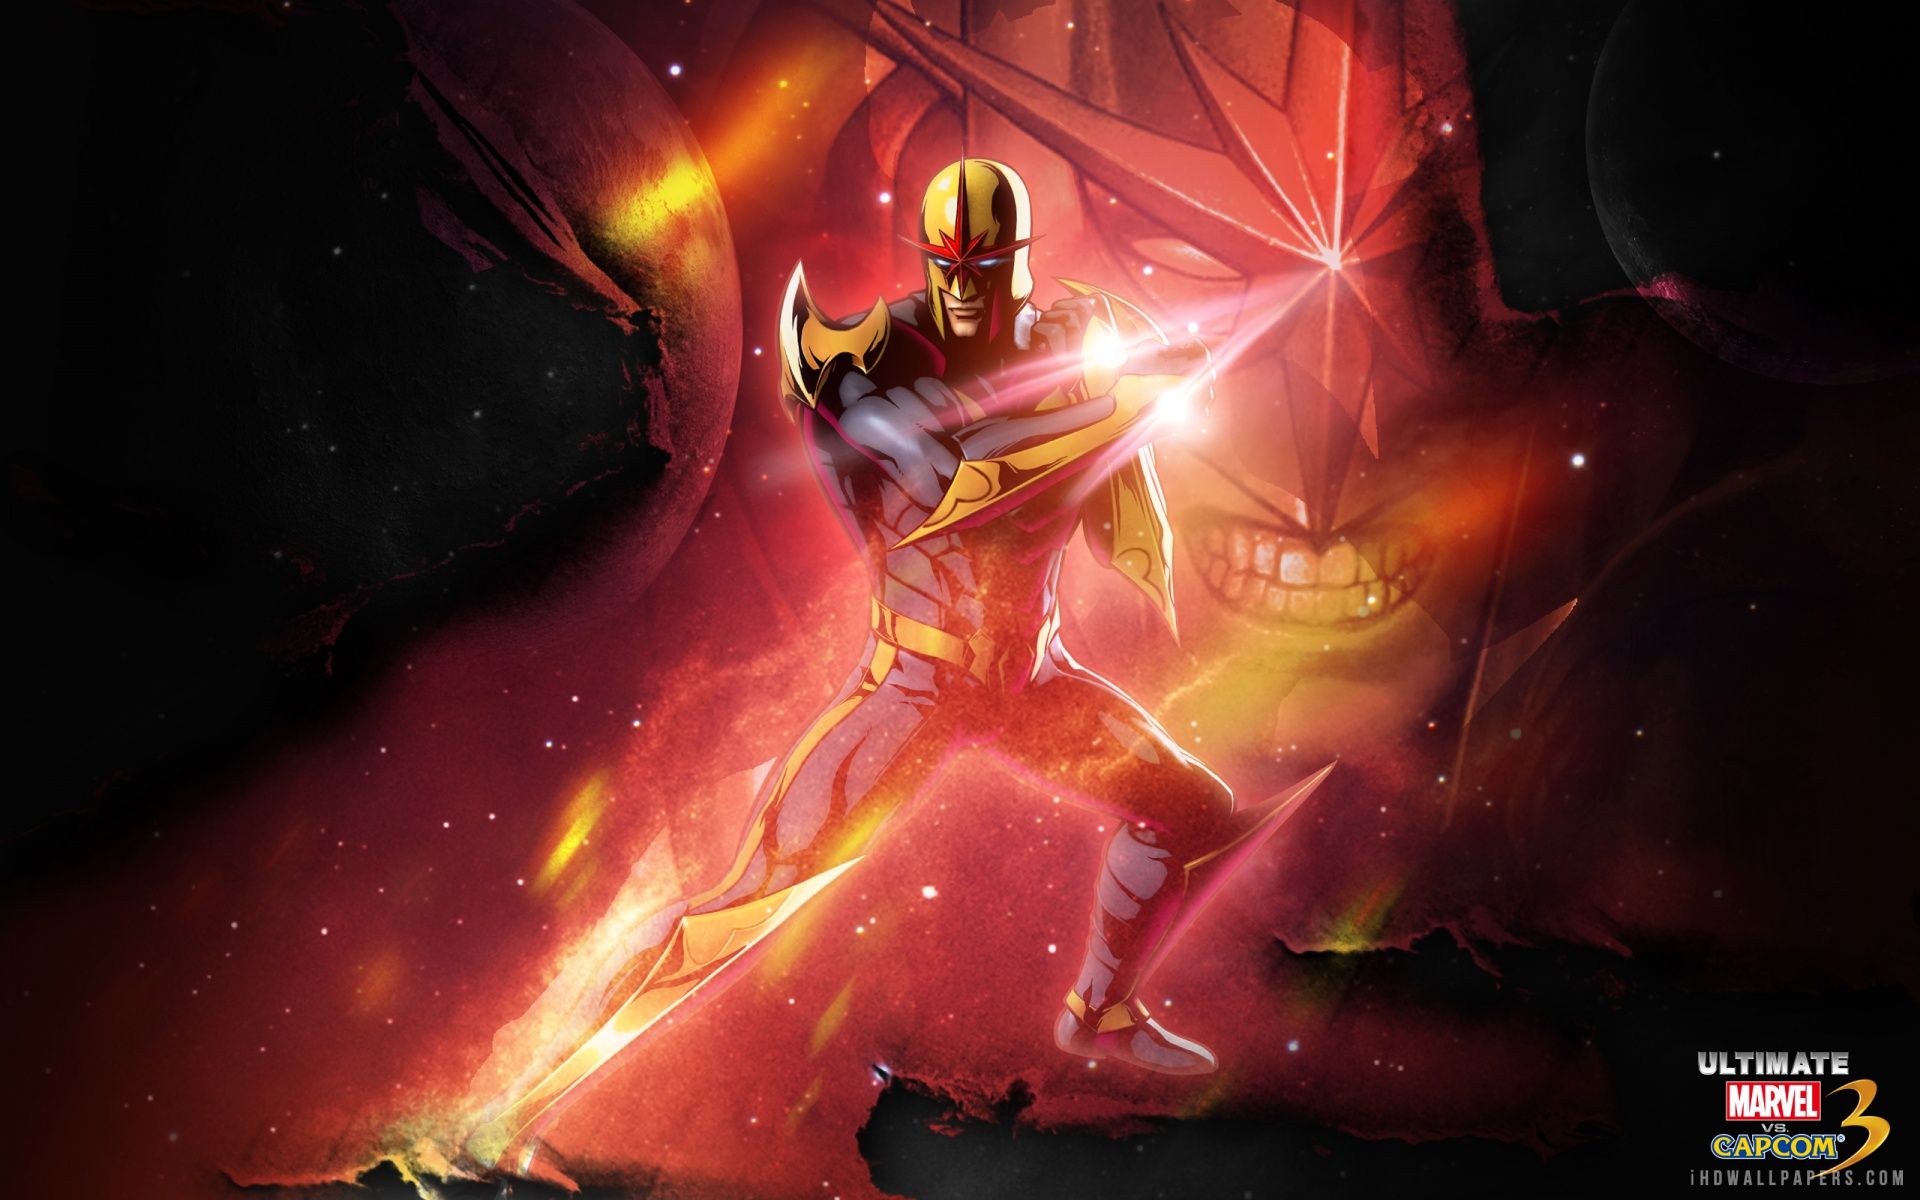 Free download Nova Ultimate Marvel Vs Capcom 3 HD Wallpaper iHD